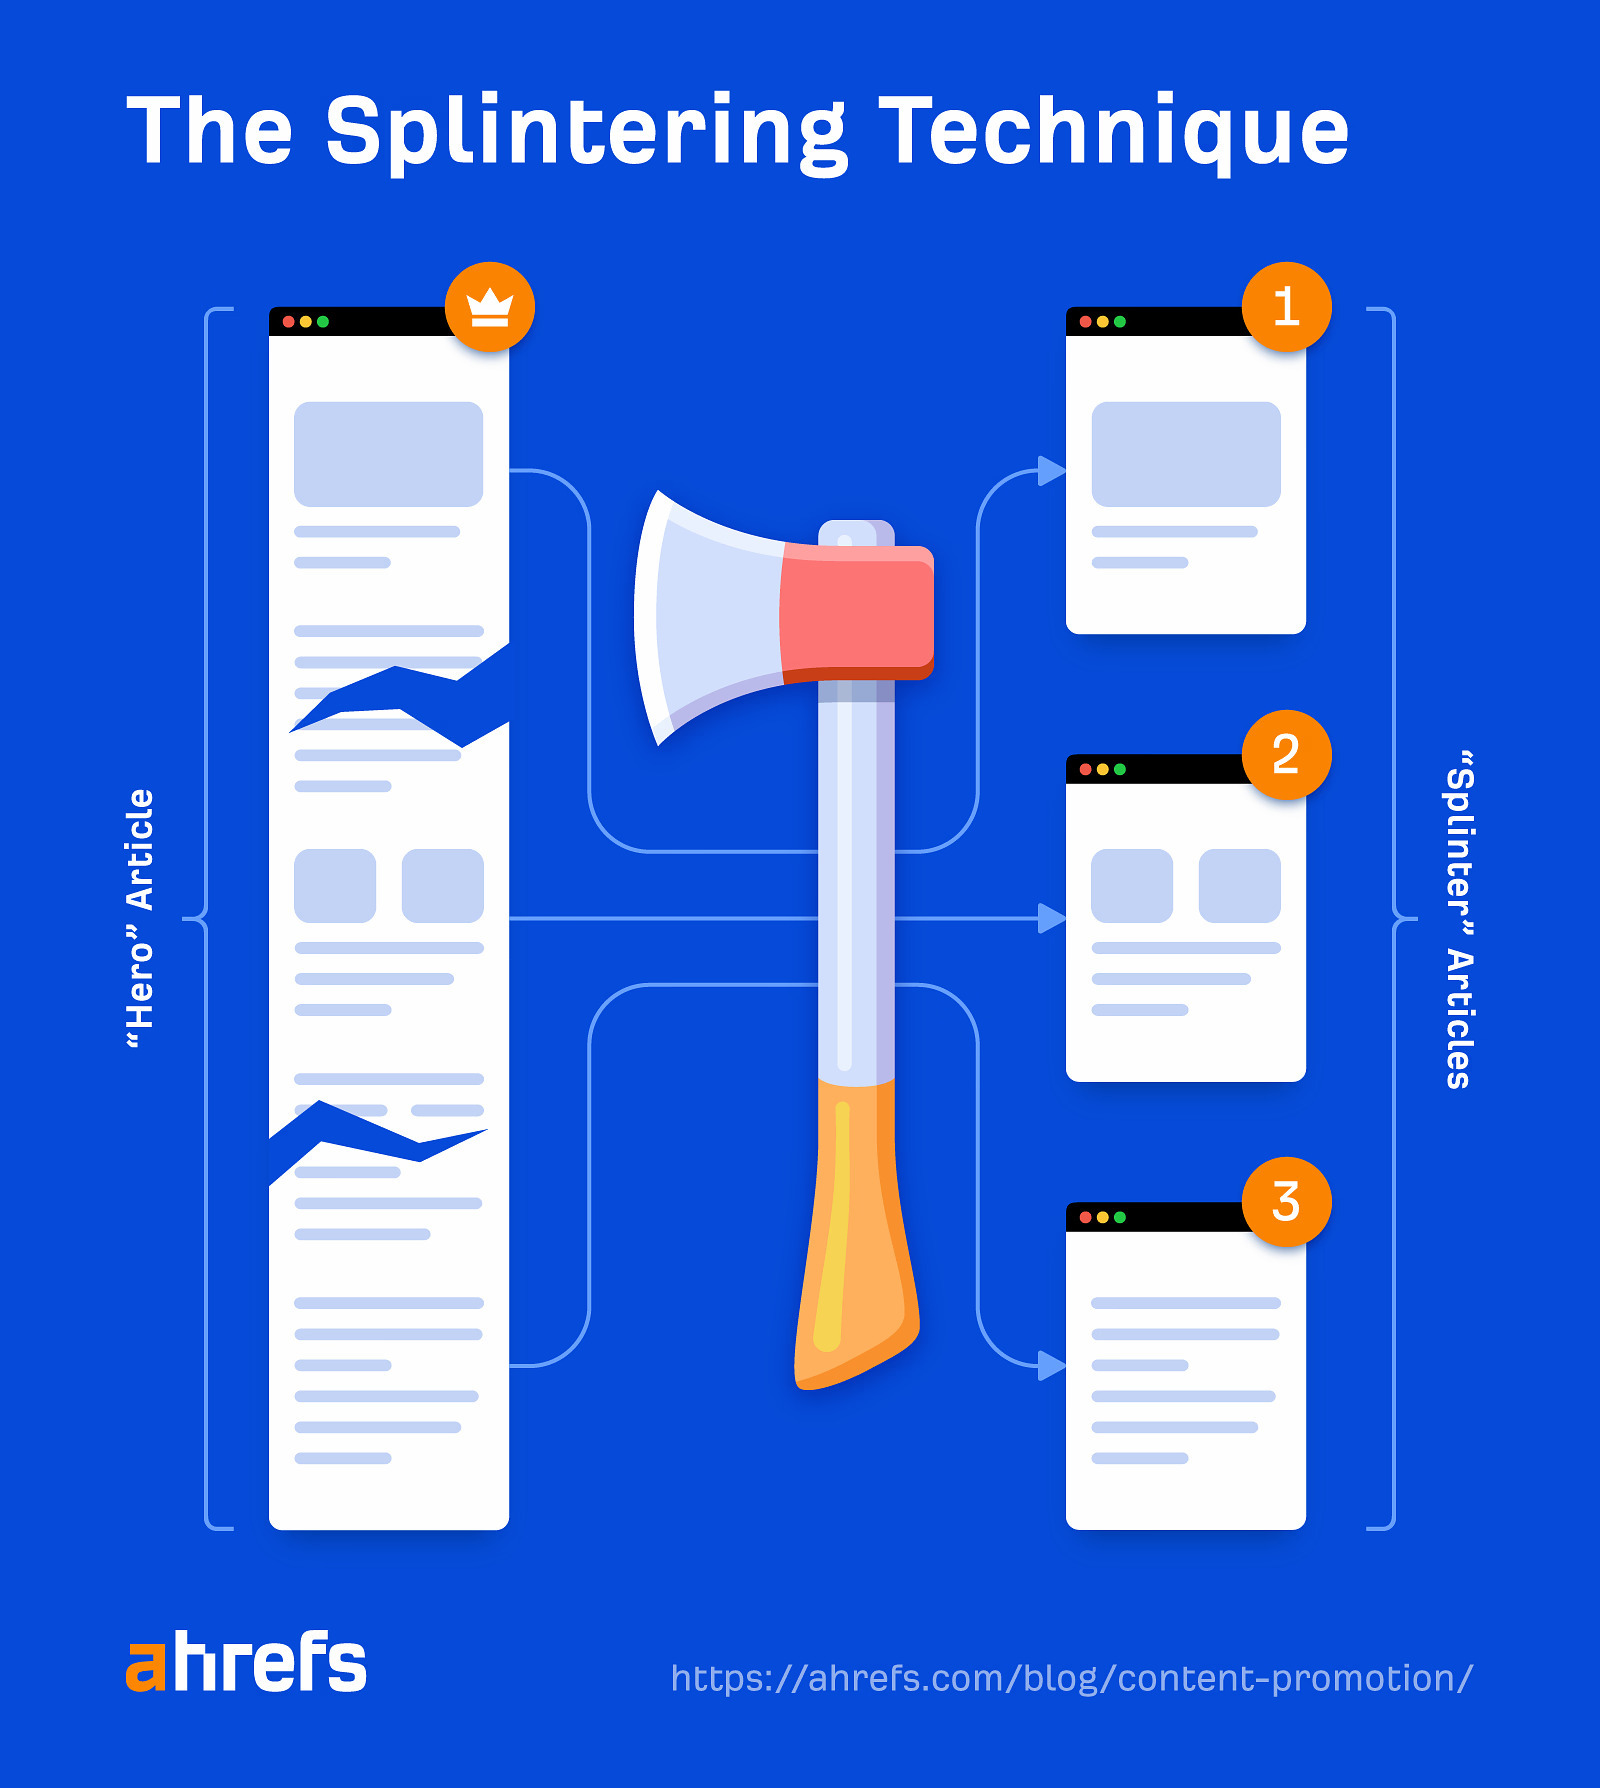 The Splintering Technique
